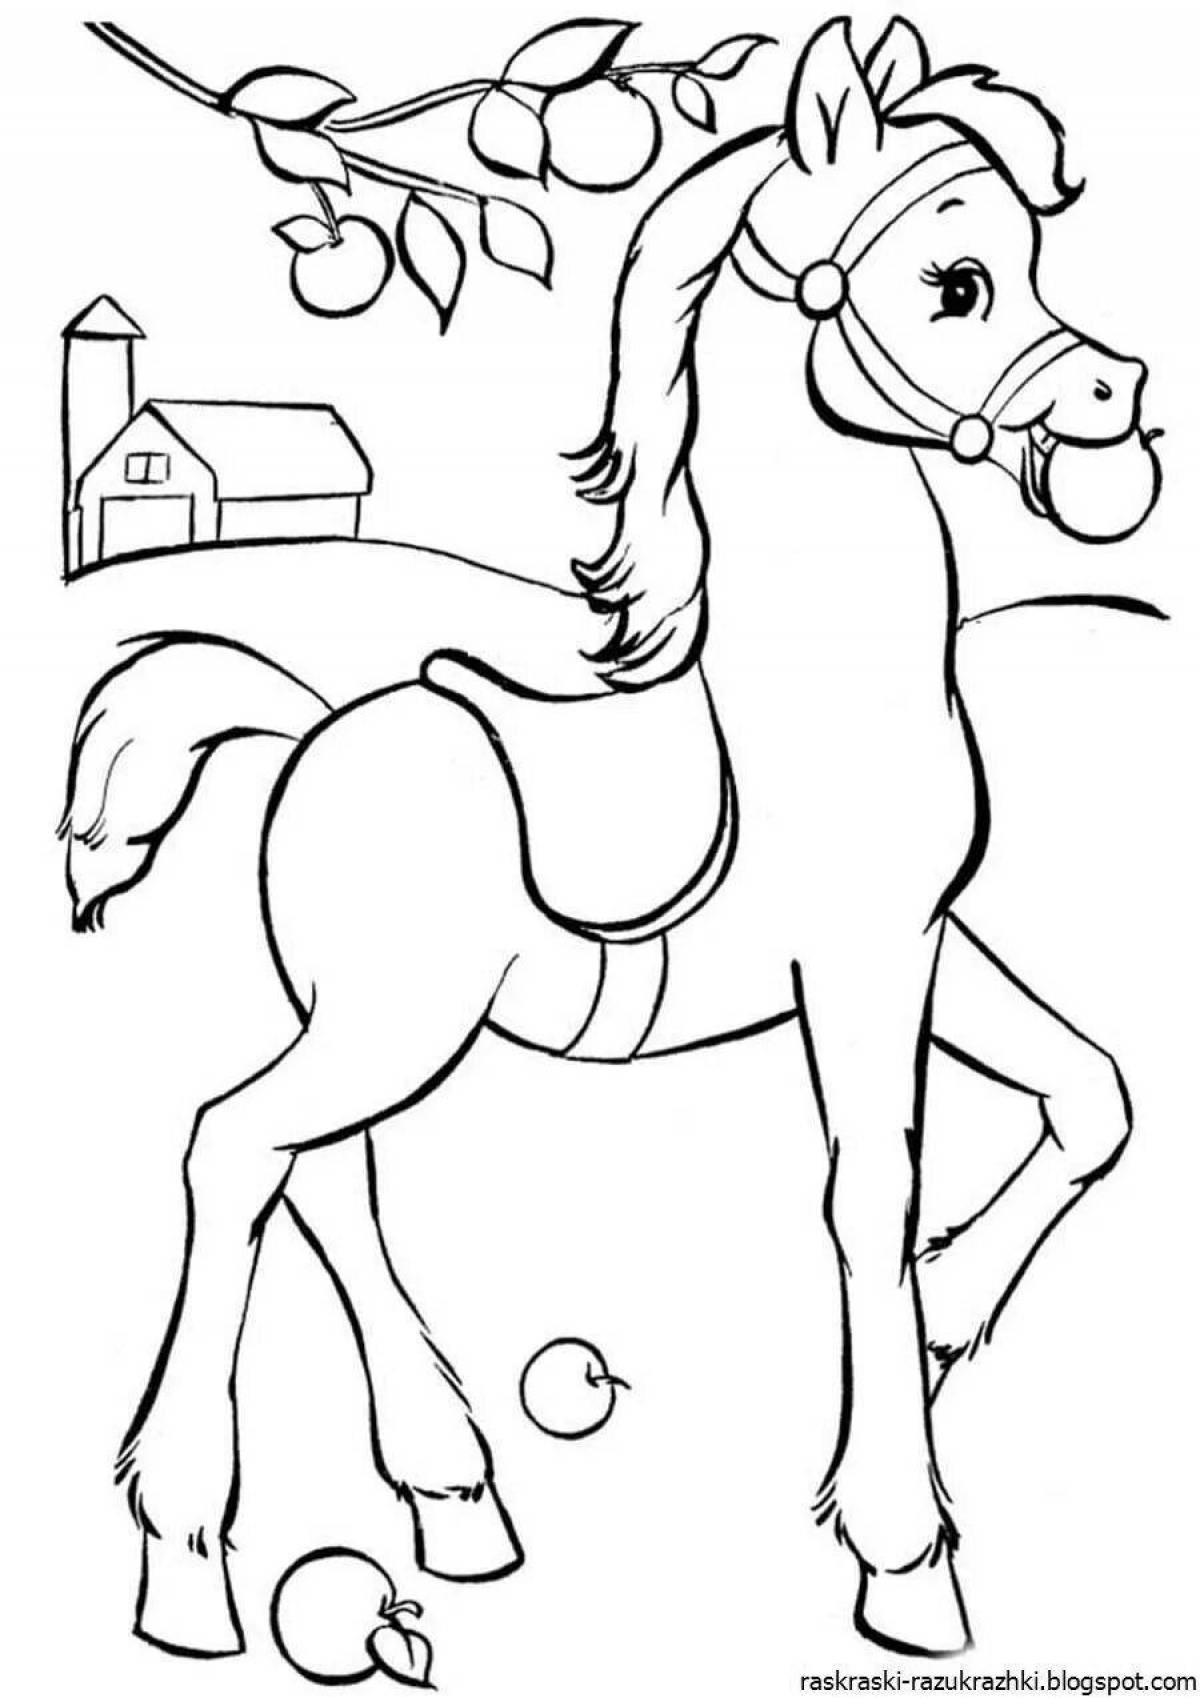 Великолепный рисунок лошади для детей